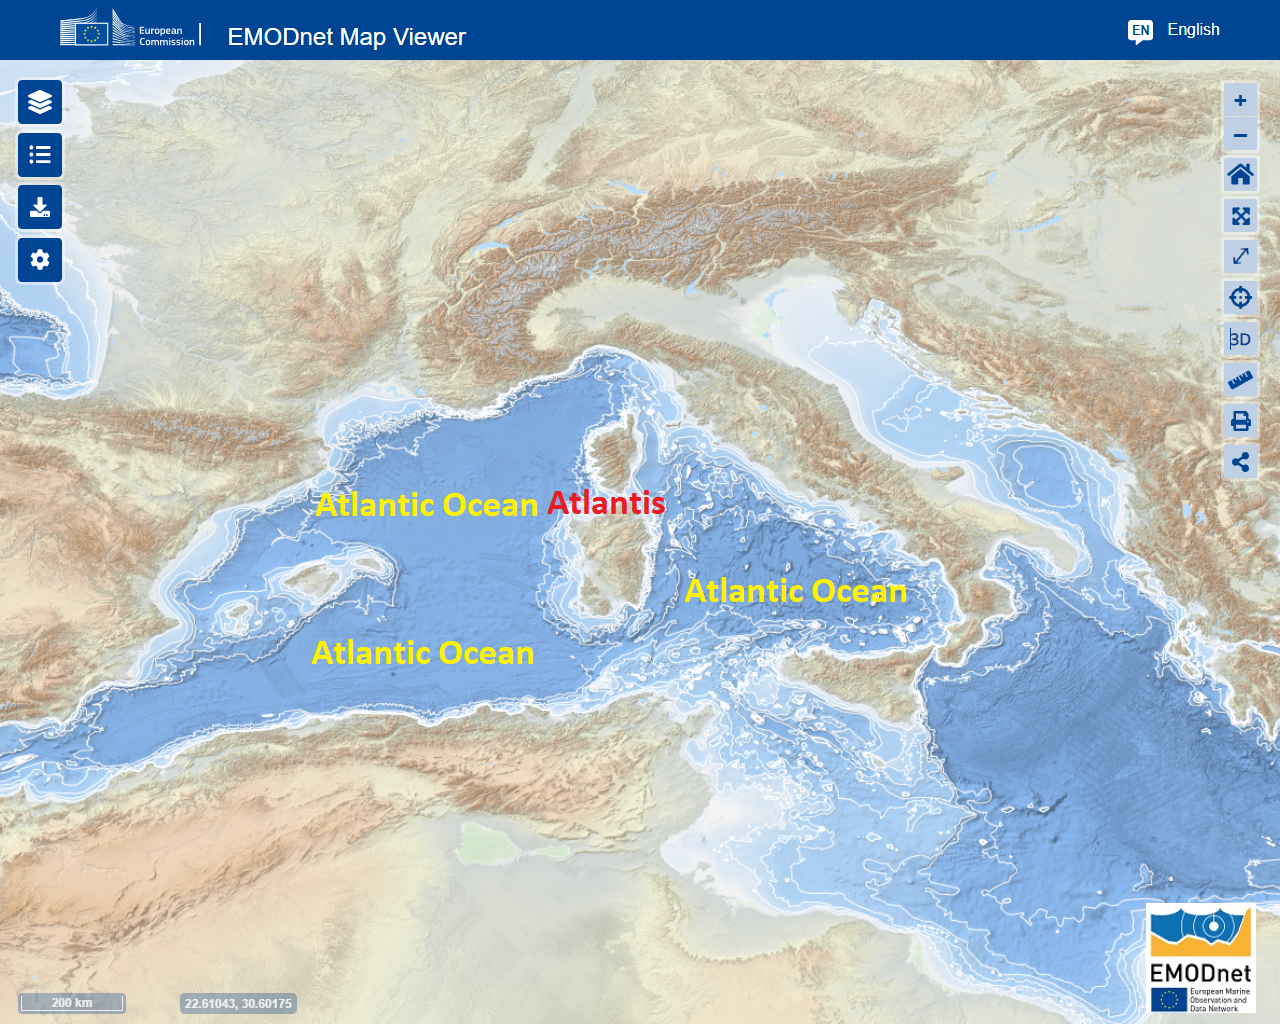 Le Colonne D'Ercole nell'Oceano Atlantico antico, poi rinominato Mare Nostrum dai Romani.